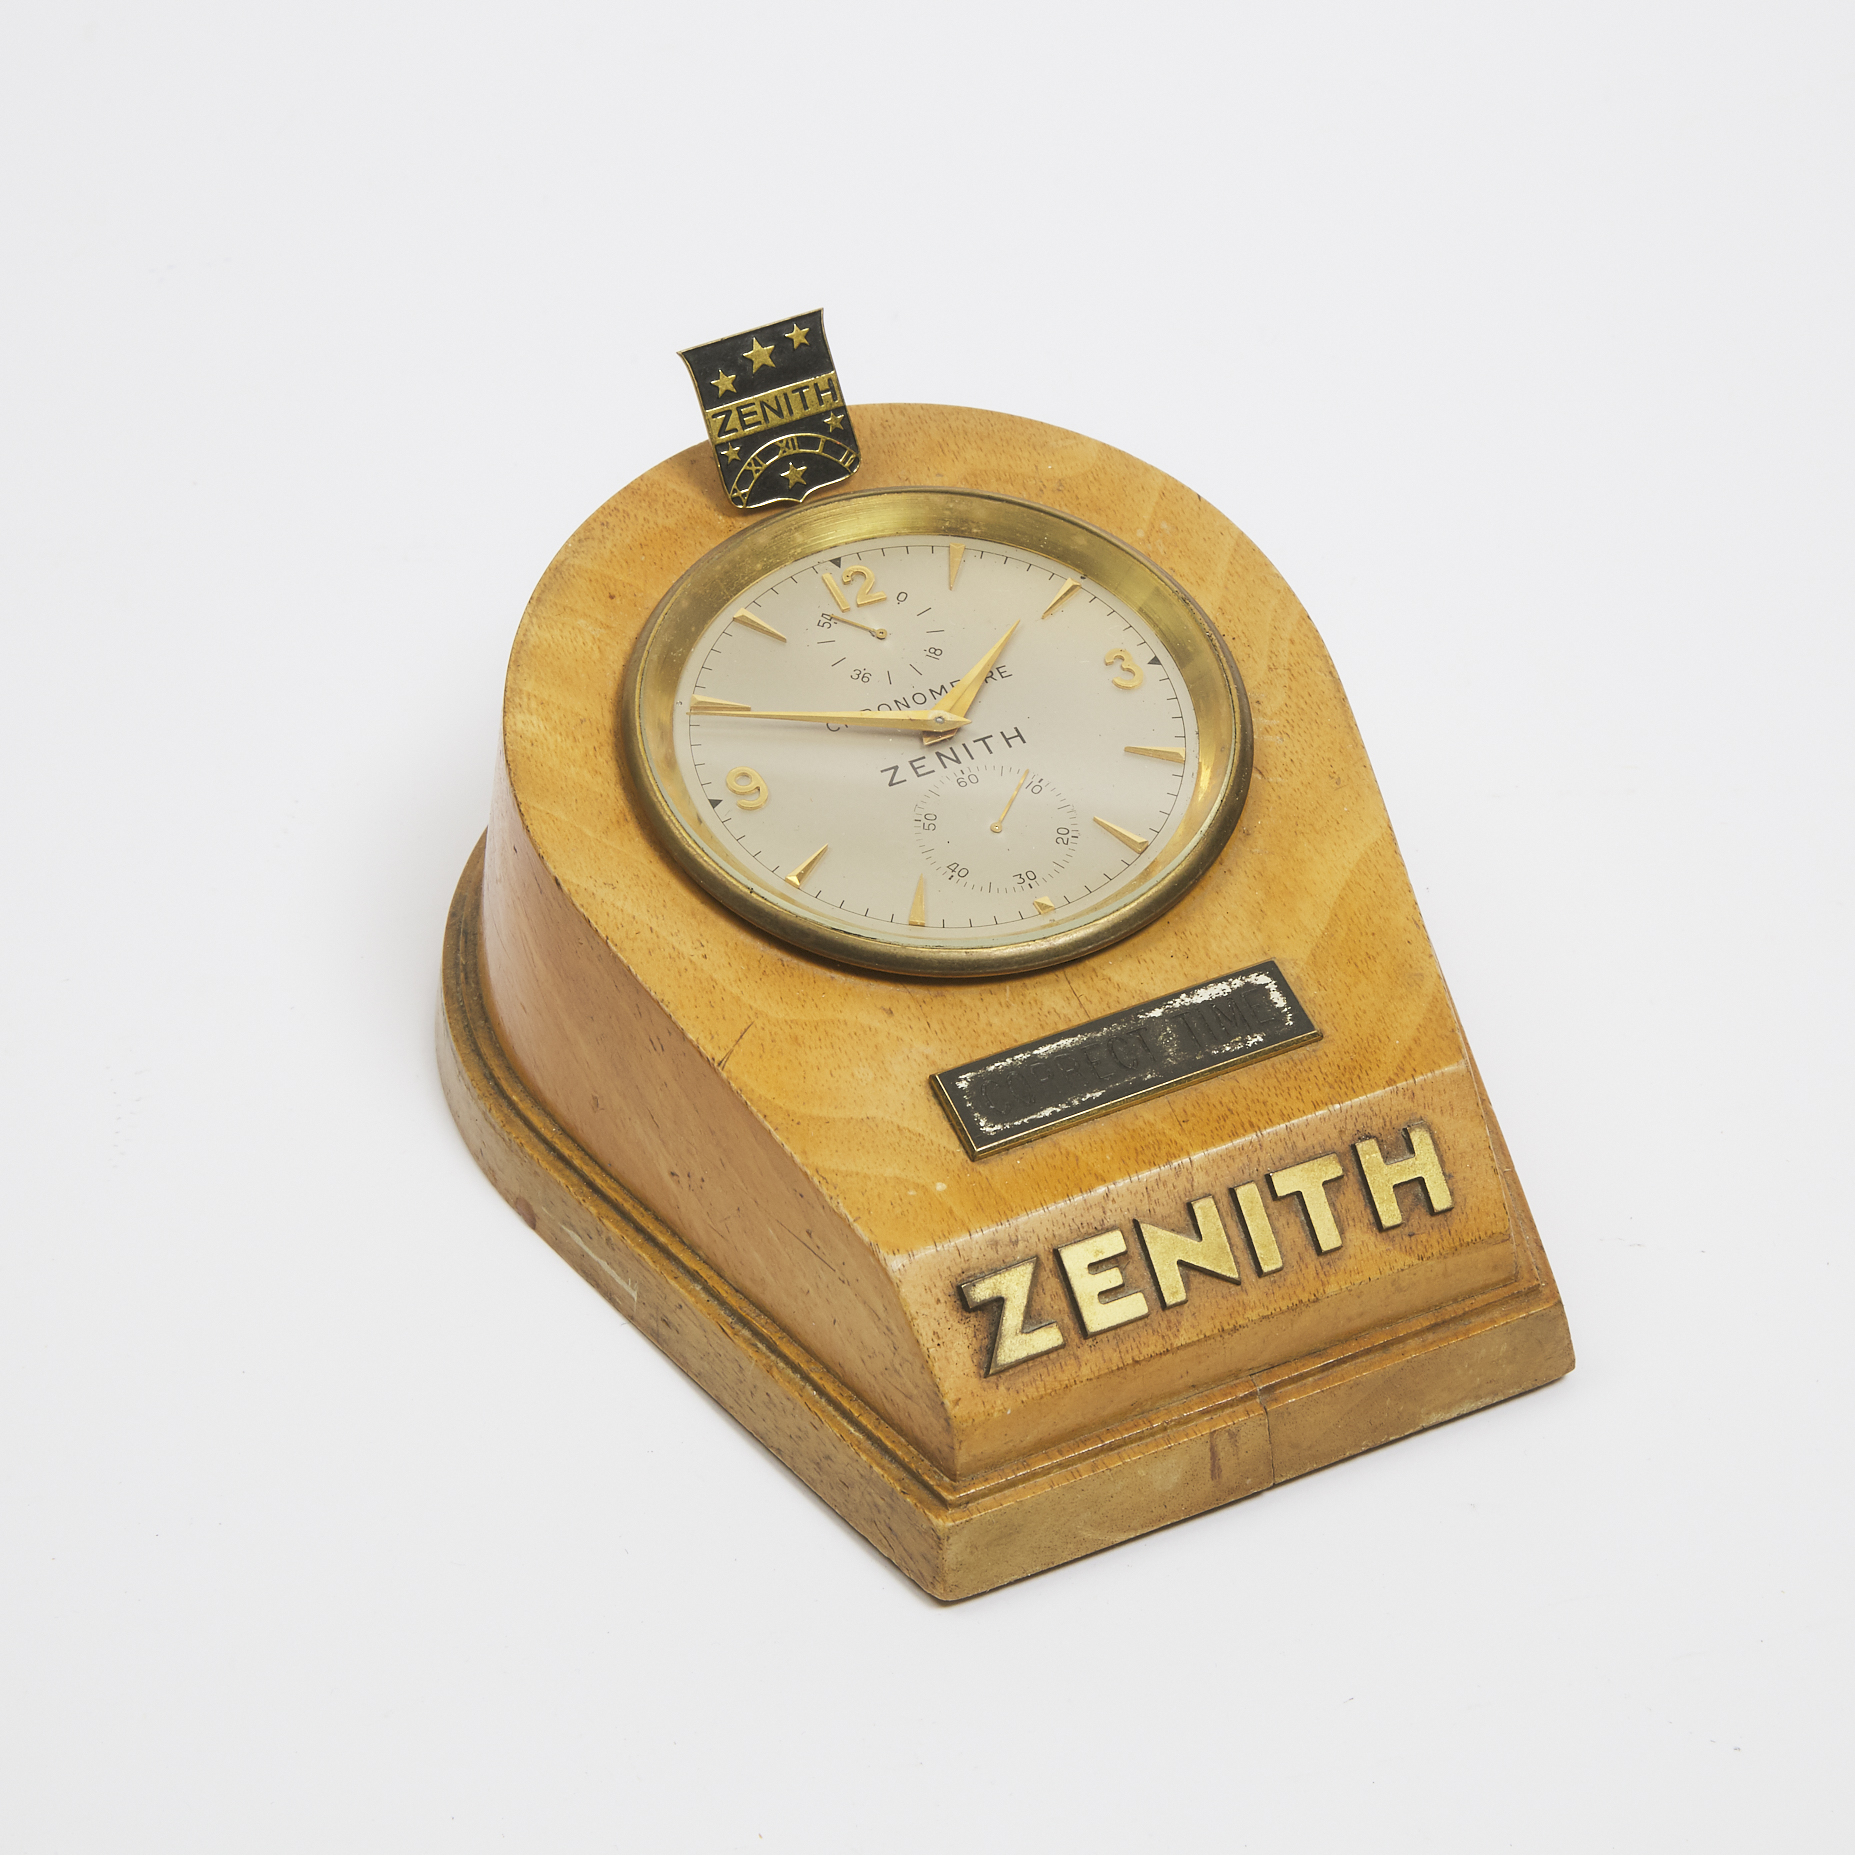 Zenith 'Correct Time' Counter Top